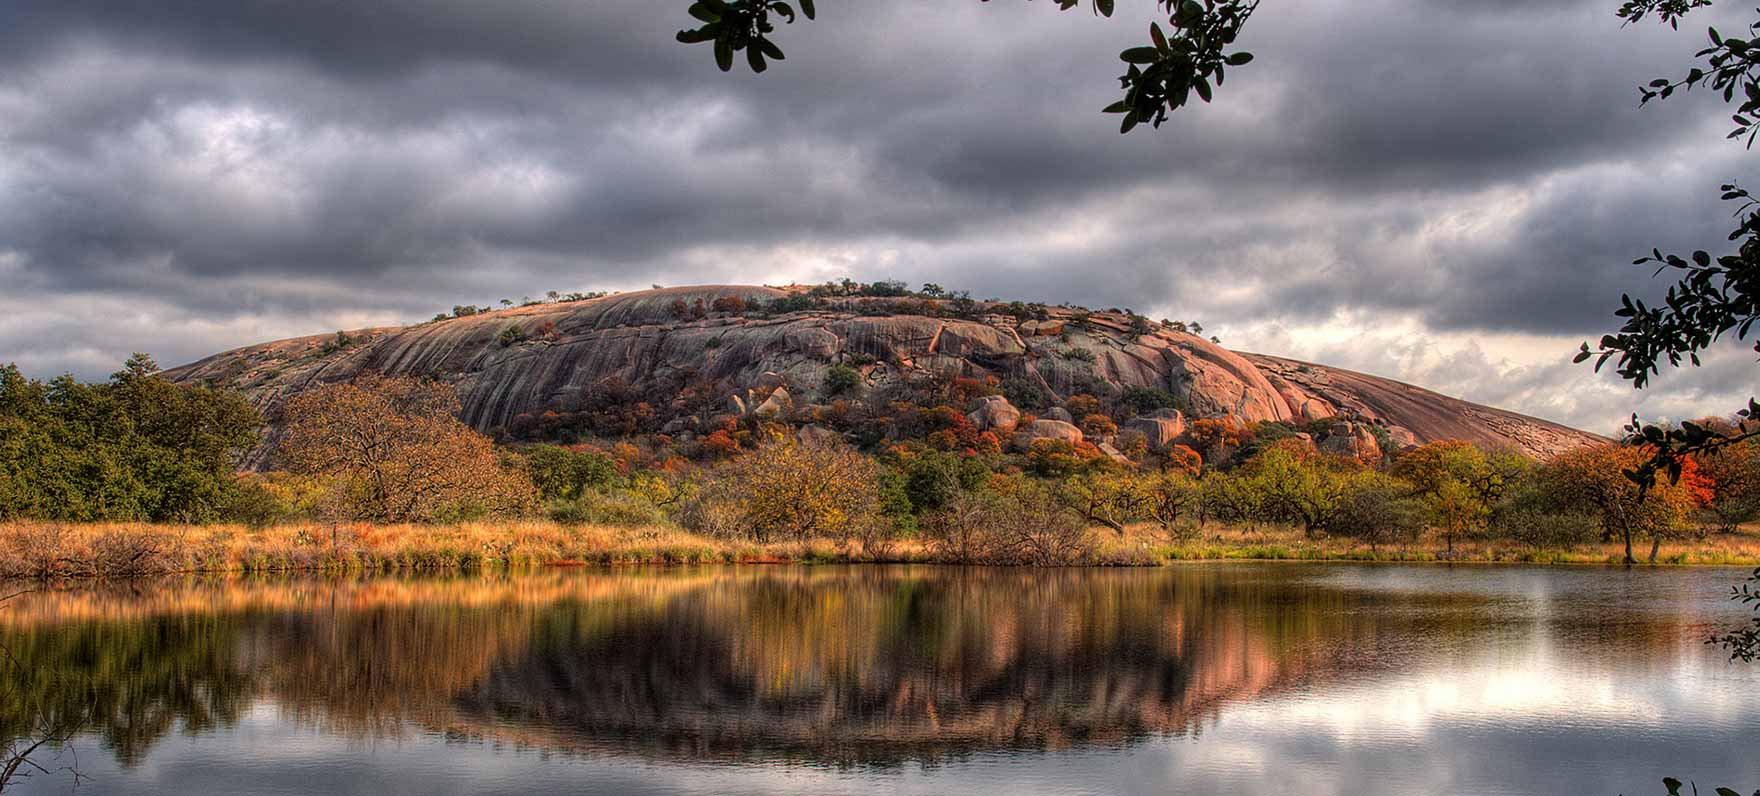 Enchanted Rock Texas Hidden Gem 